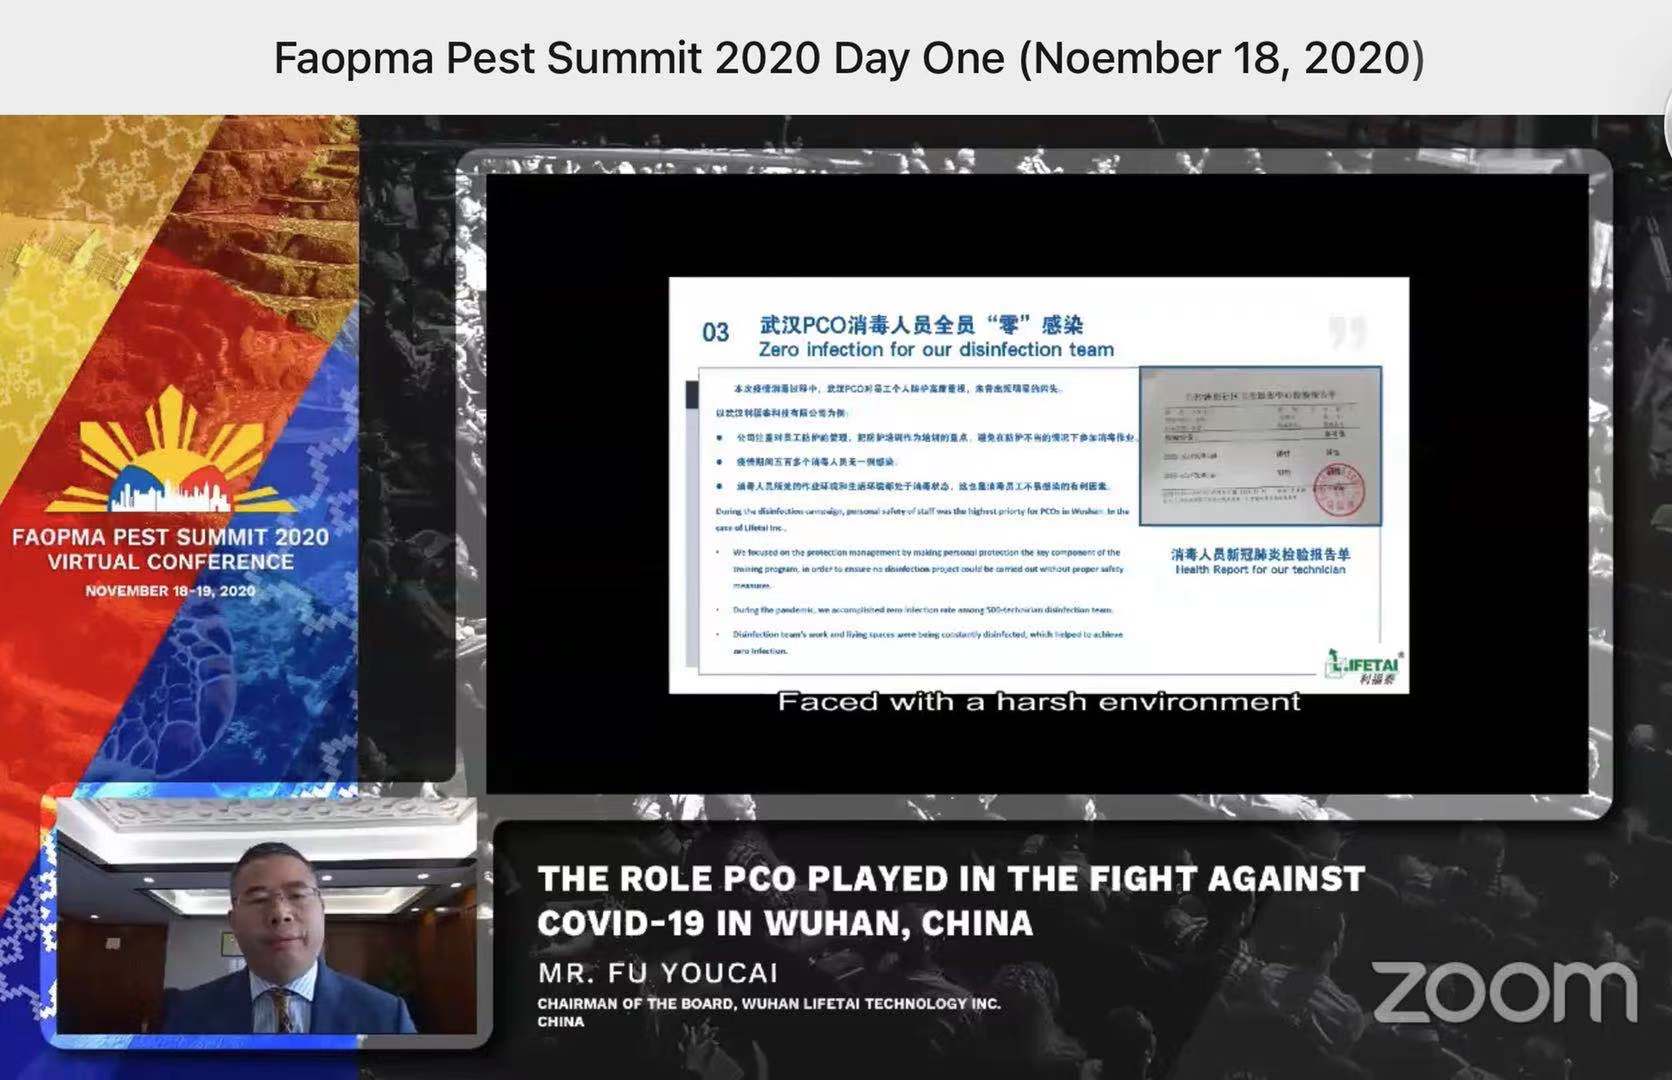 利福泰董事长付友才参加FAOPMA 2020 Pest Summit会议